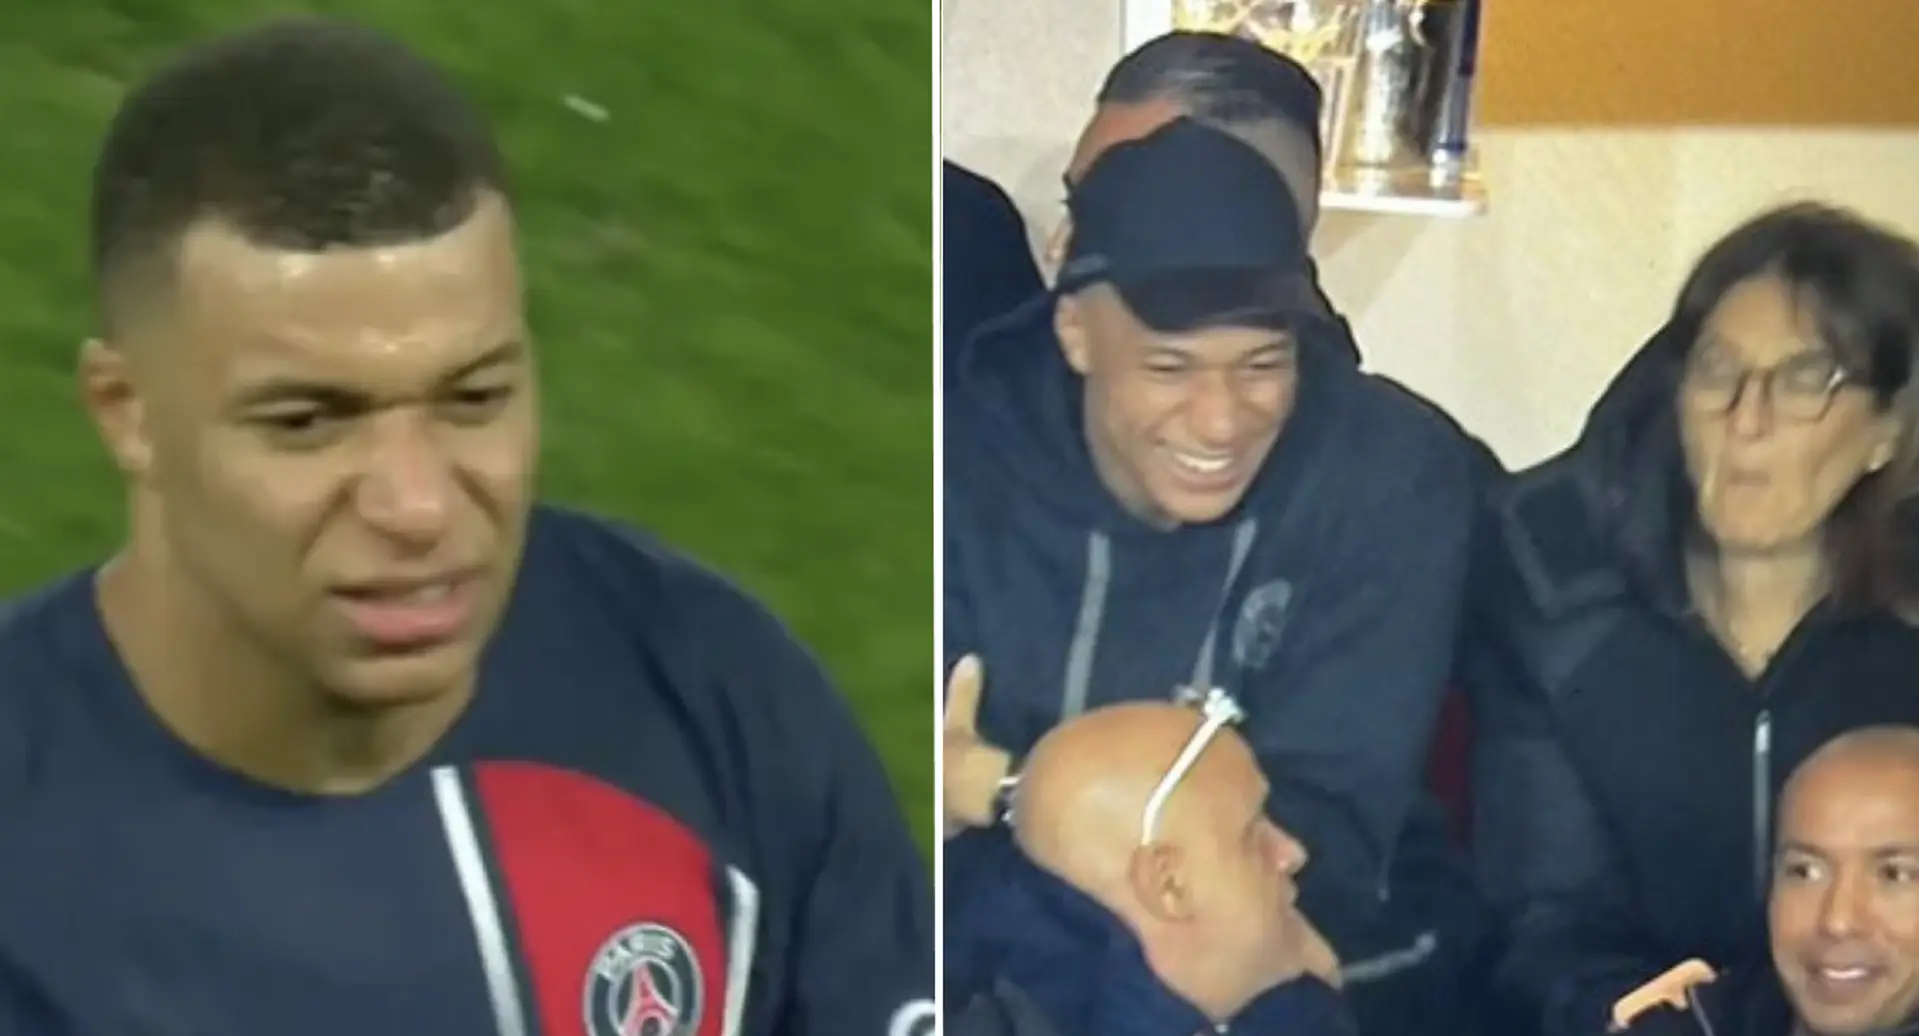 Mbappé sustituido en el descanso vs Mónaco, se cambia a ropa normal para ver jugar al PSG desde las gradas con su madre